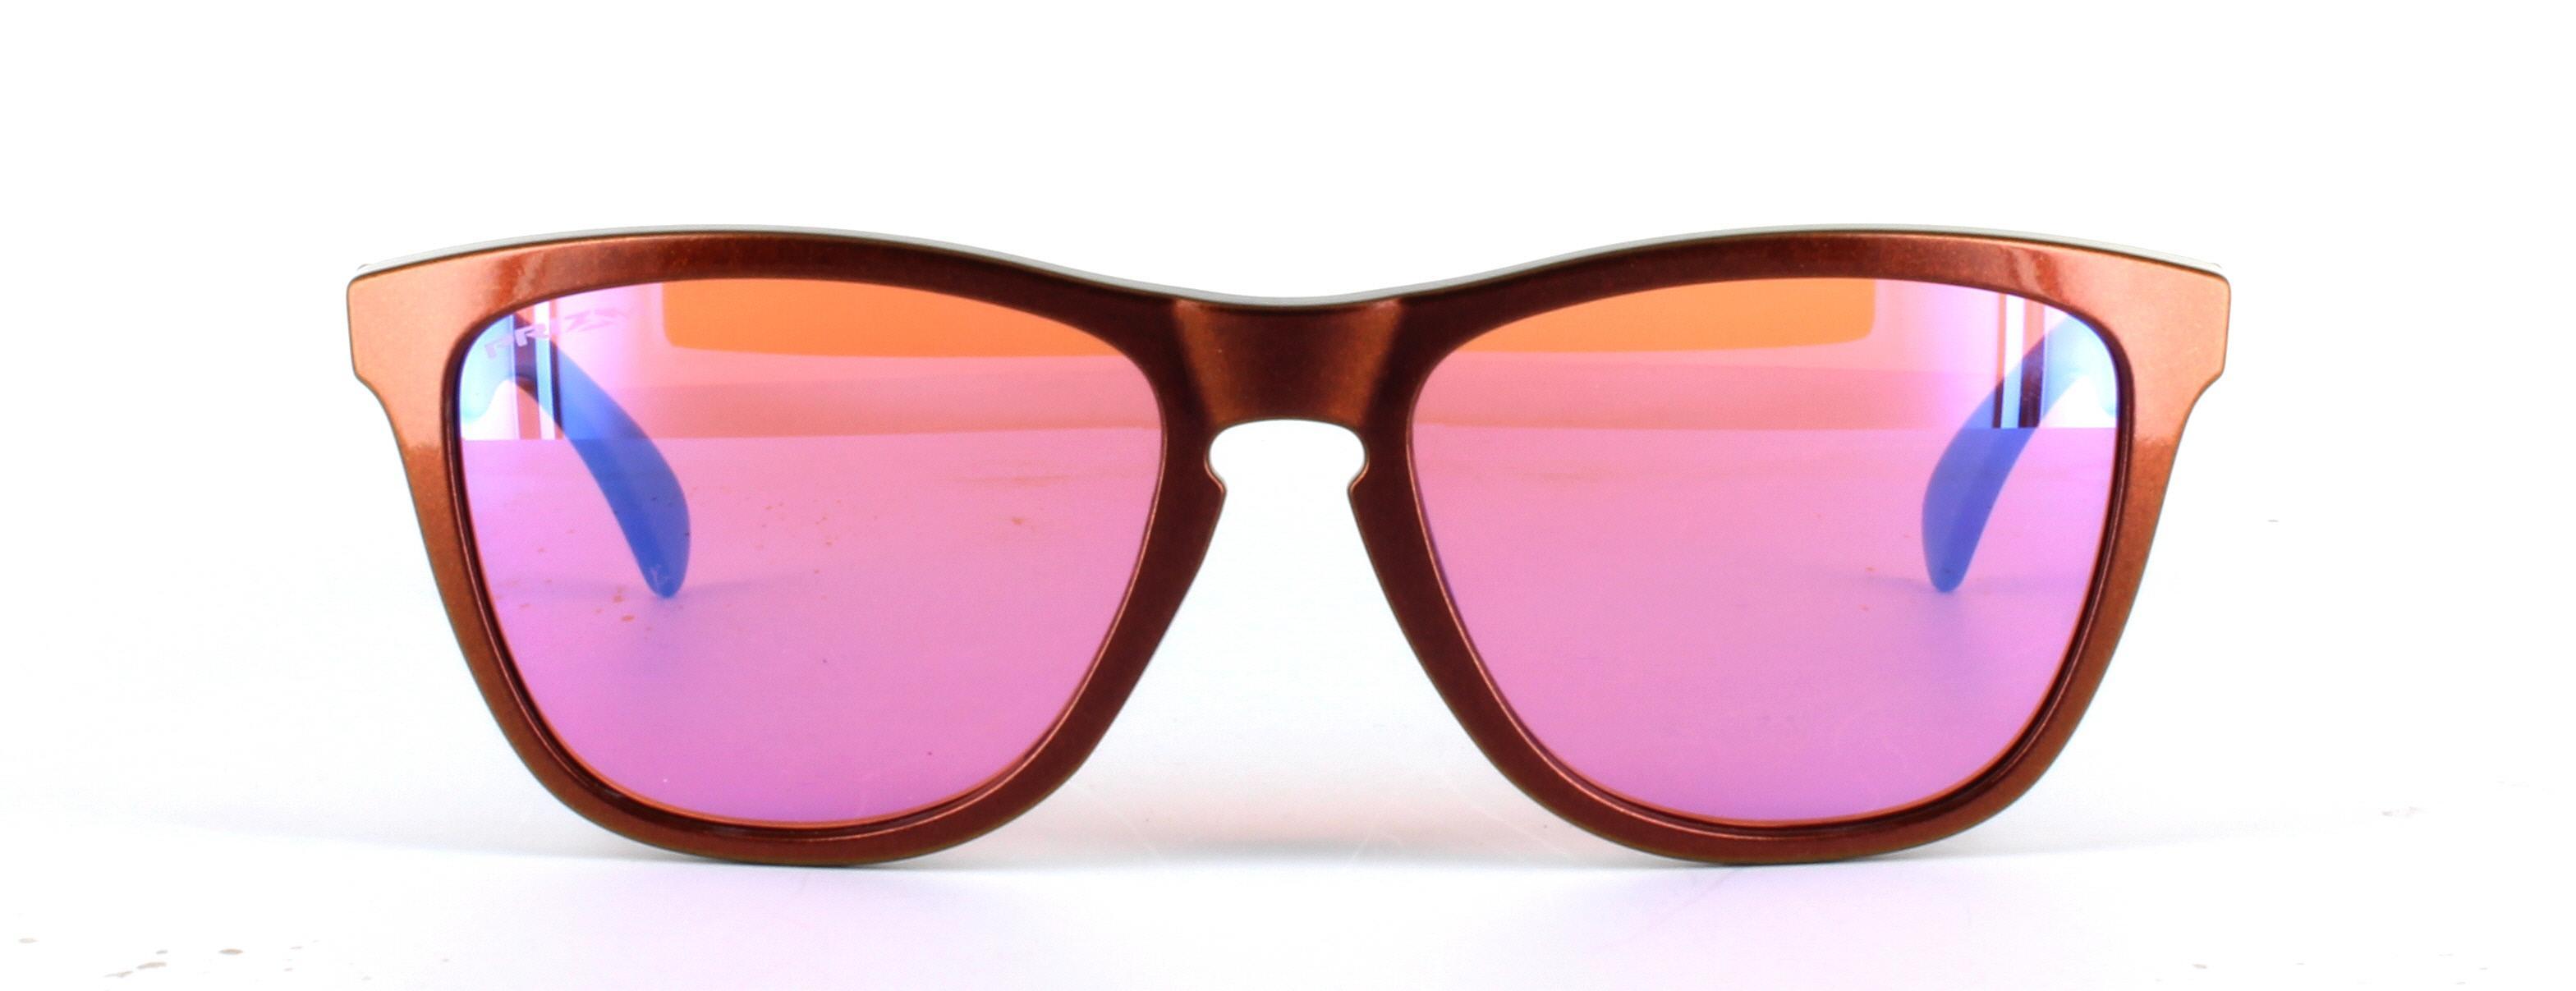 Oakley (O9013) Copper Full Rim Plastic Prescription Sunglasses - Image View 5